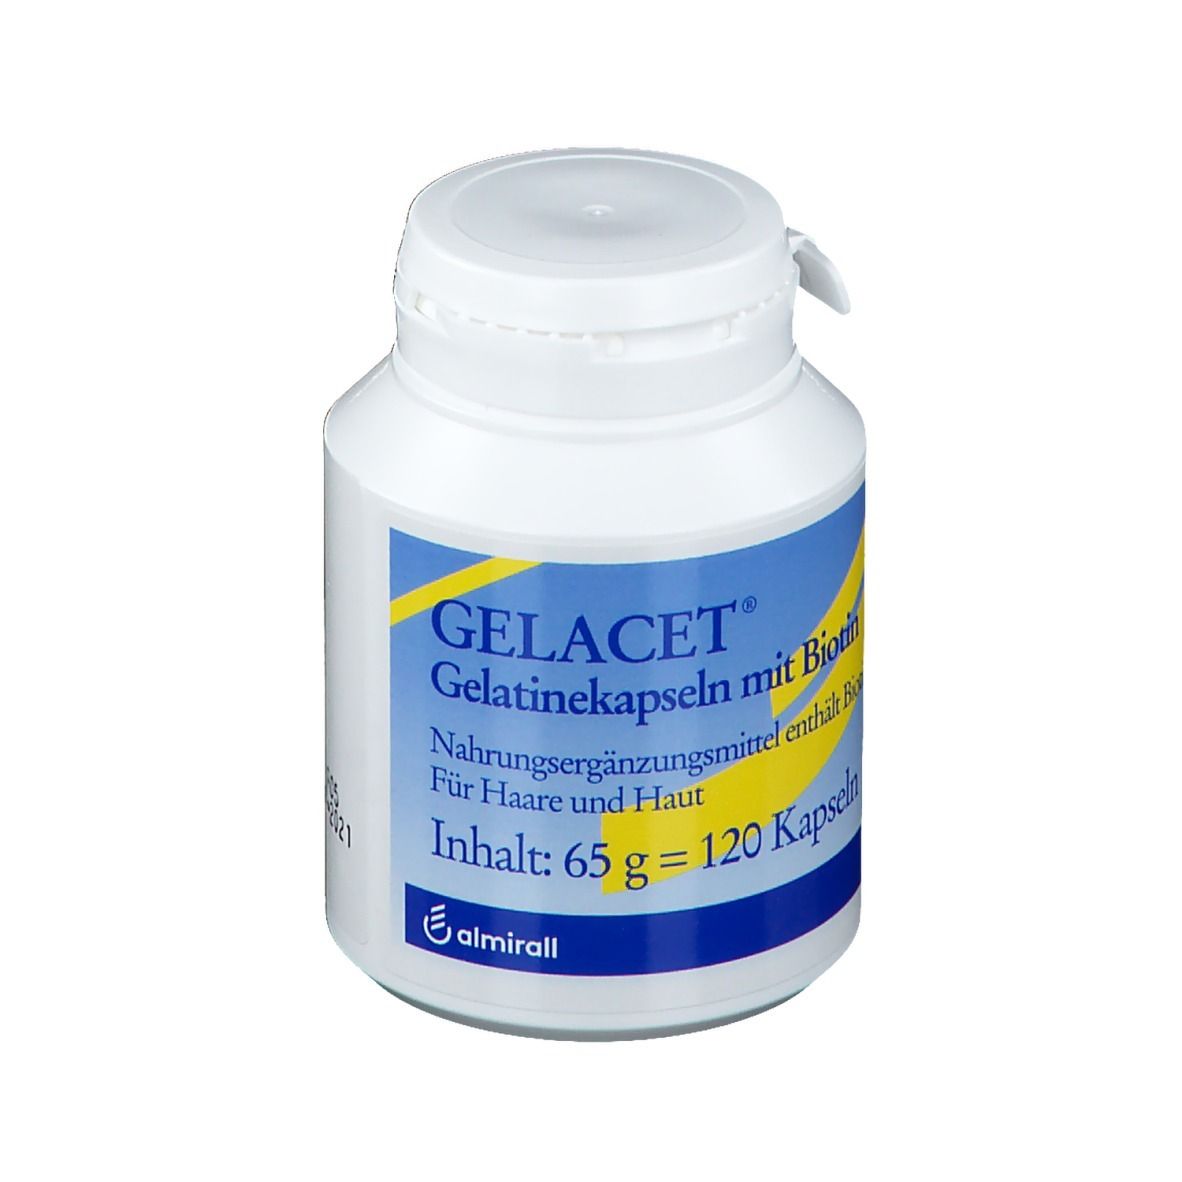 Gelacet® Gelatinekapseln mit Biotin